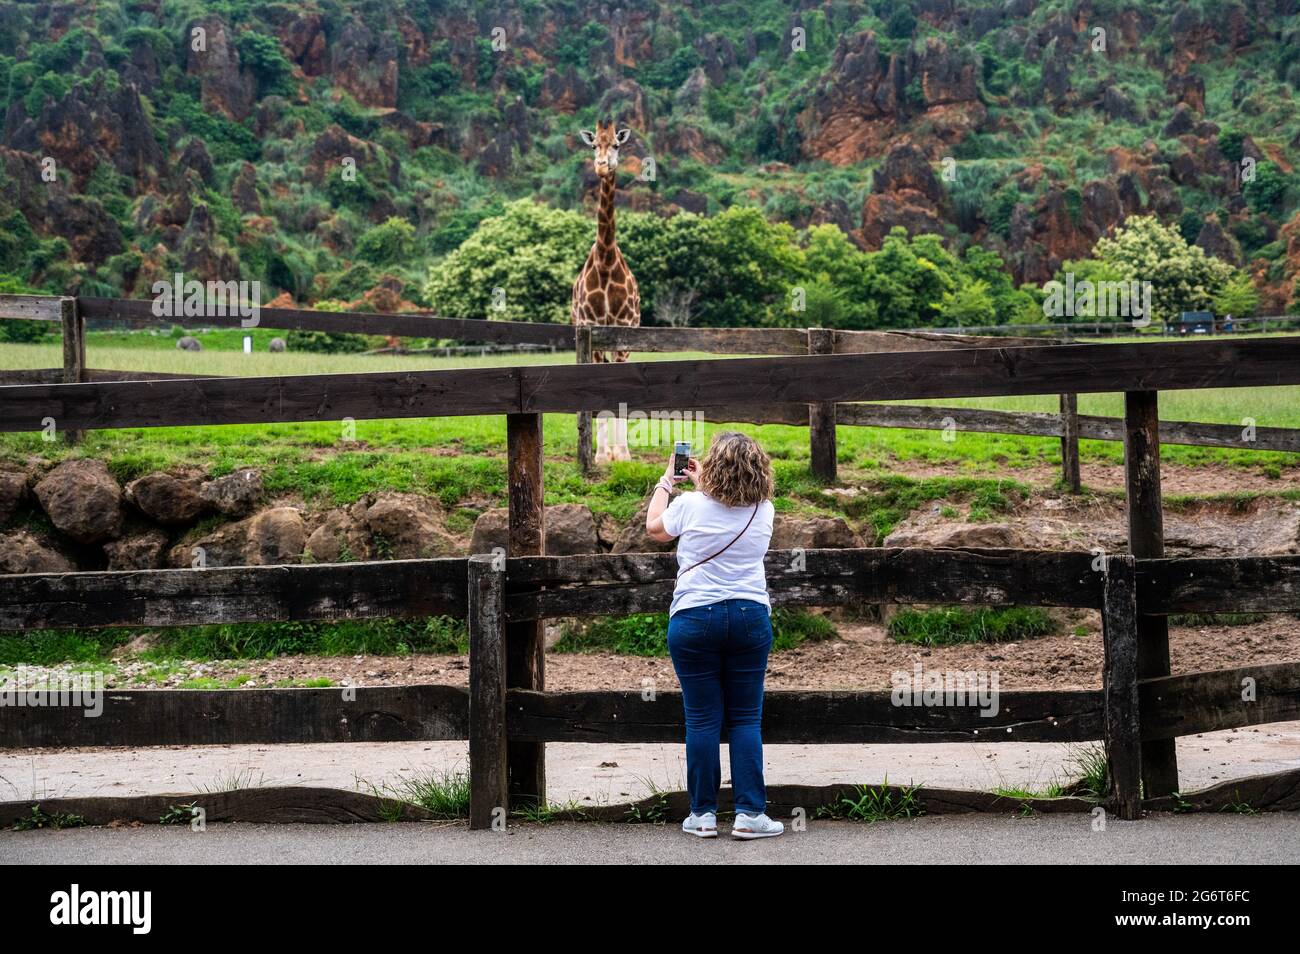 Eine Frau fotografiert mit ihrem Telefon eine Giraffe im Naturpark Cabarceno. Der Naturpark Cabarceno ist kein konventioneller Zoo. Es ist eine Fläche von 75 Stockfoto